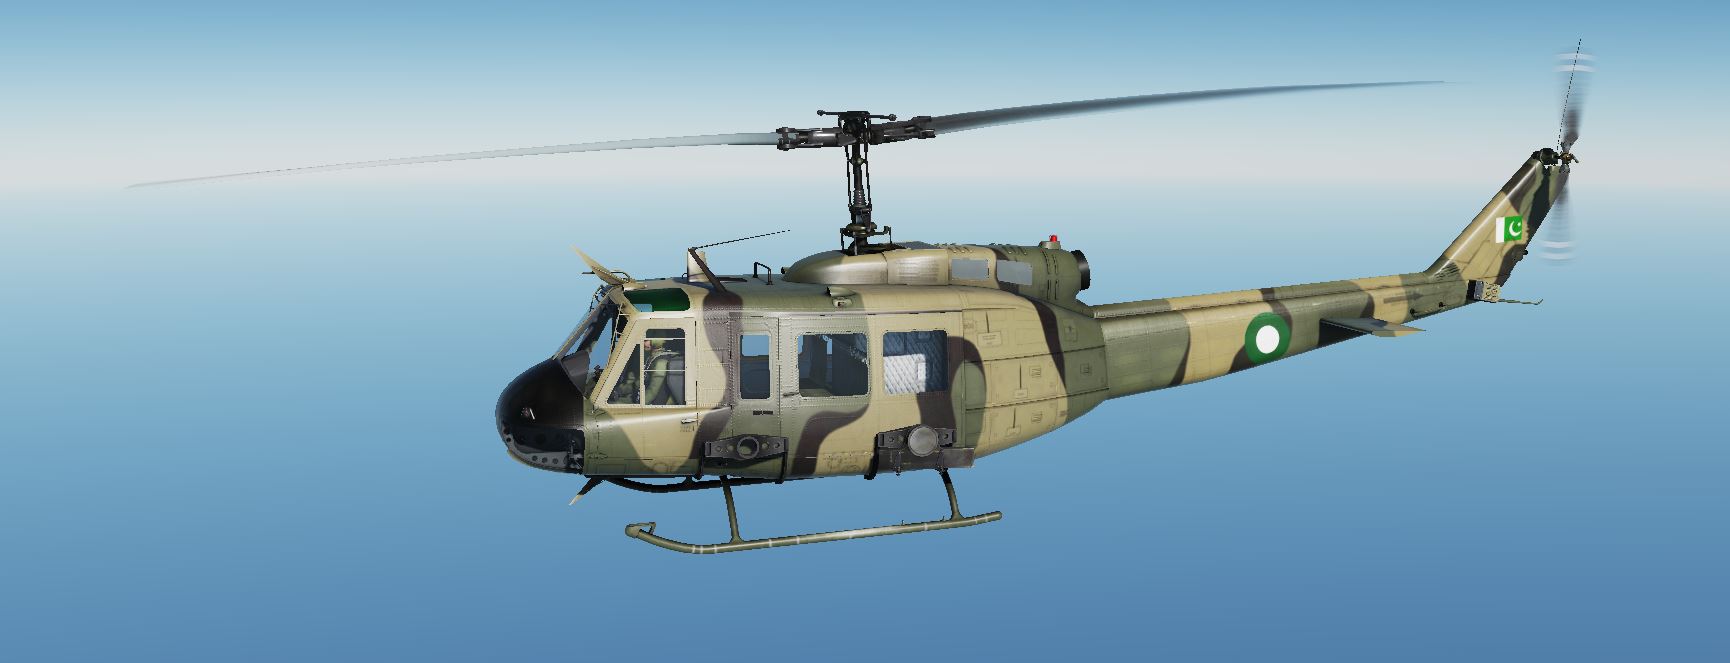 Pakistan Army UH-1